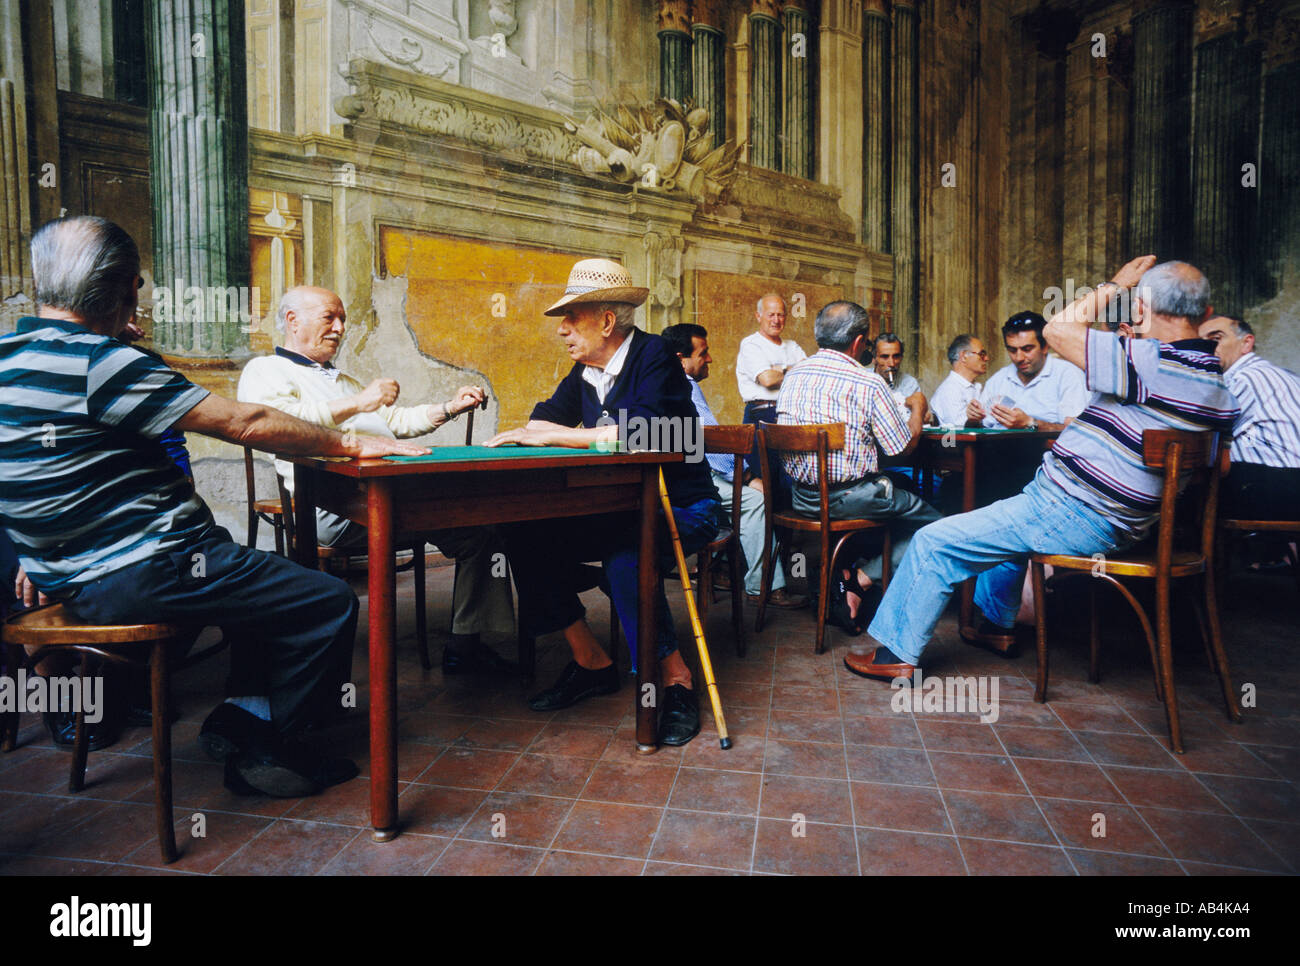 Sorrente. Italie. Un groupe d'hommes italiens se réunissent pour jouer à des cartes sur fond de fresques en fading dans la Sedil Dominova. Banque D'Images